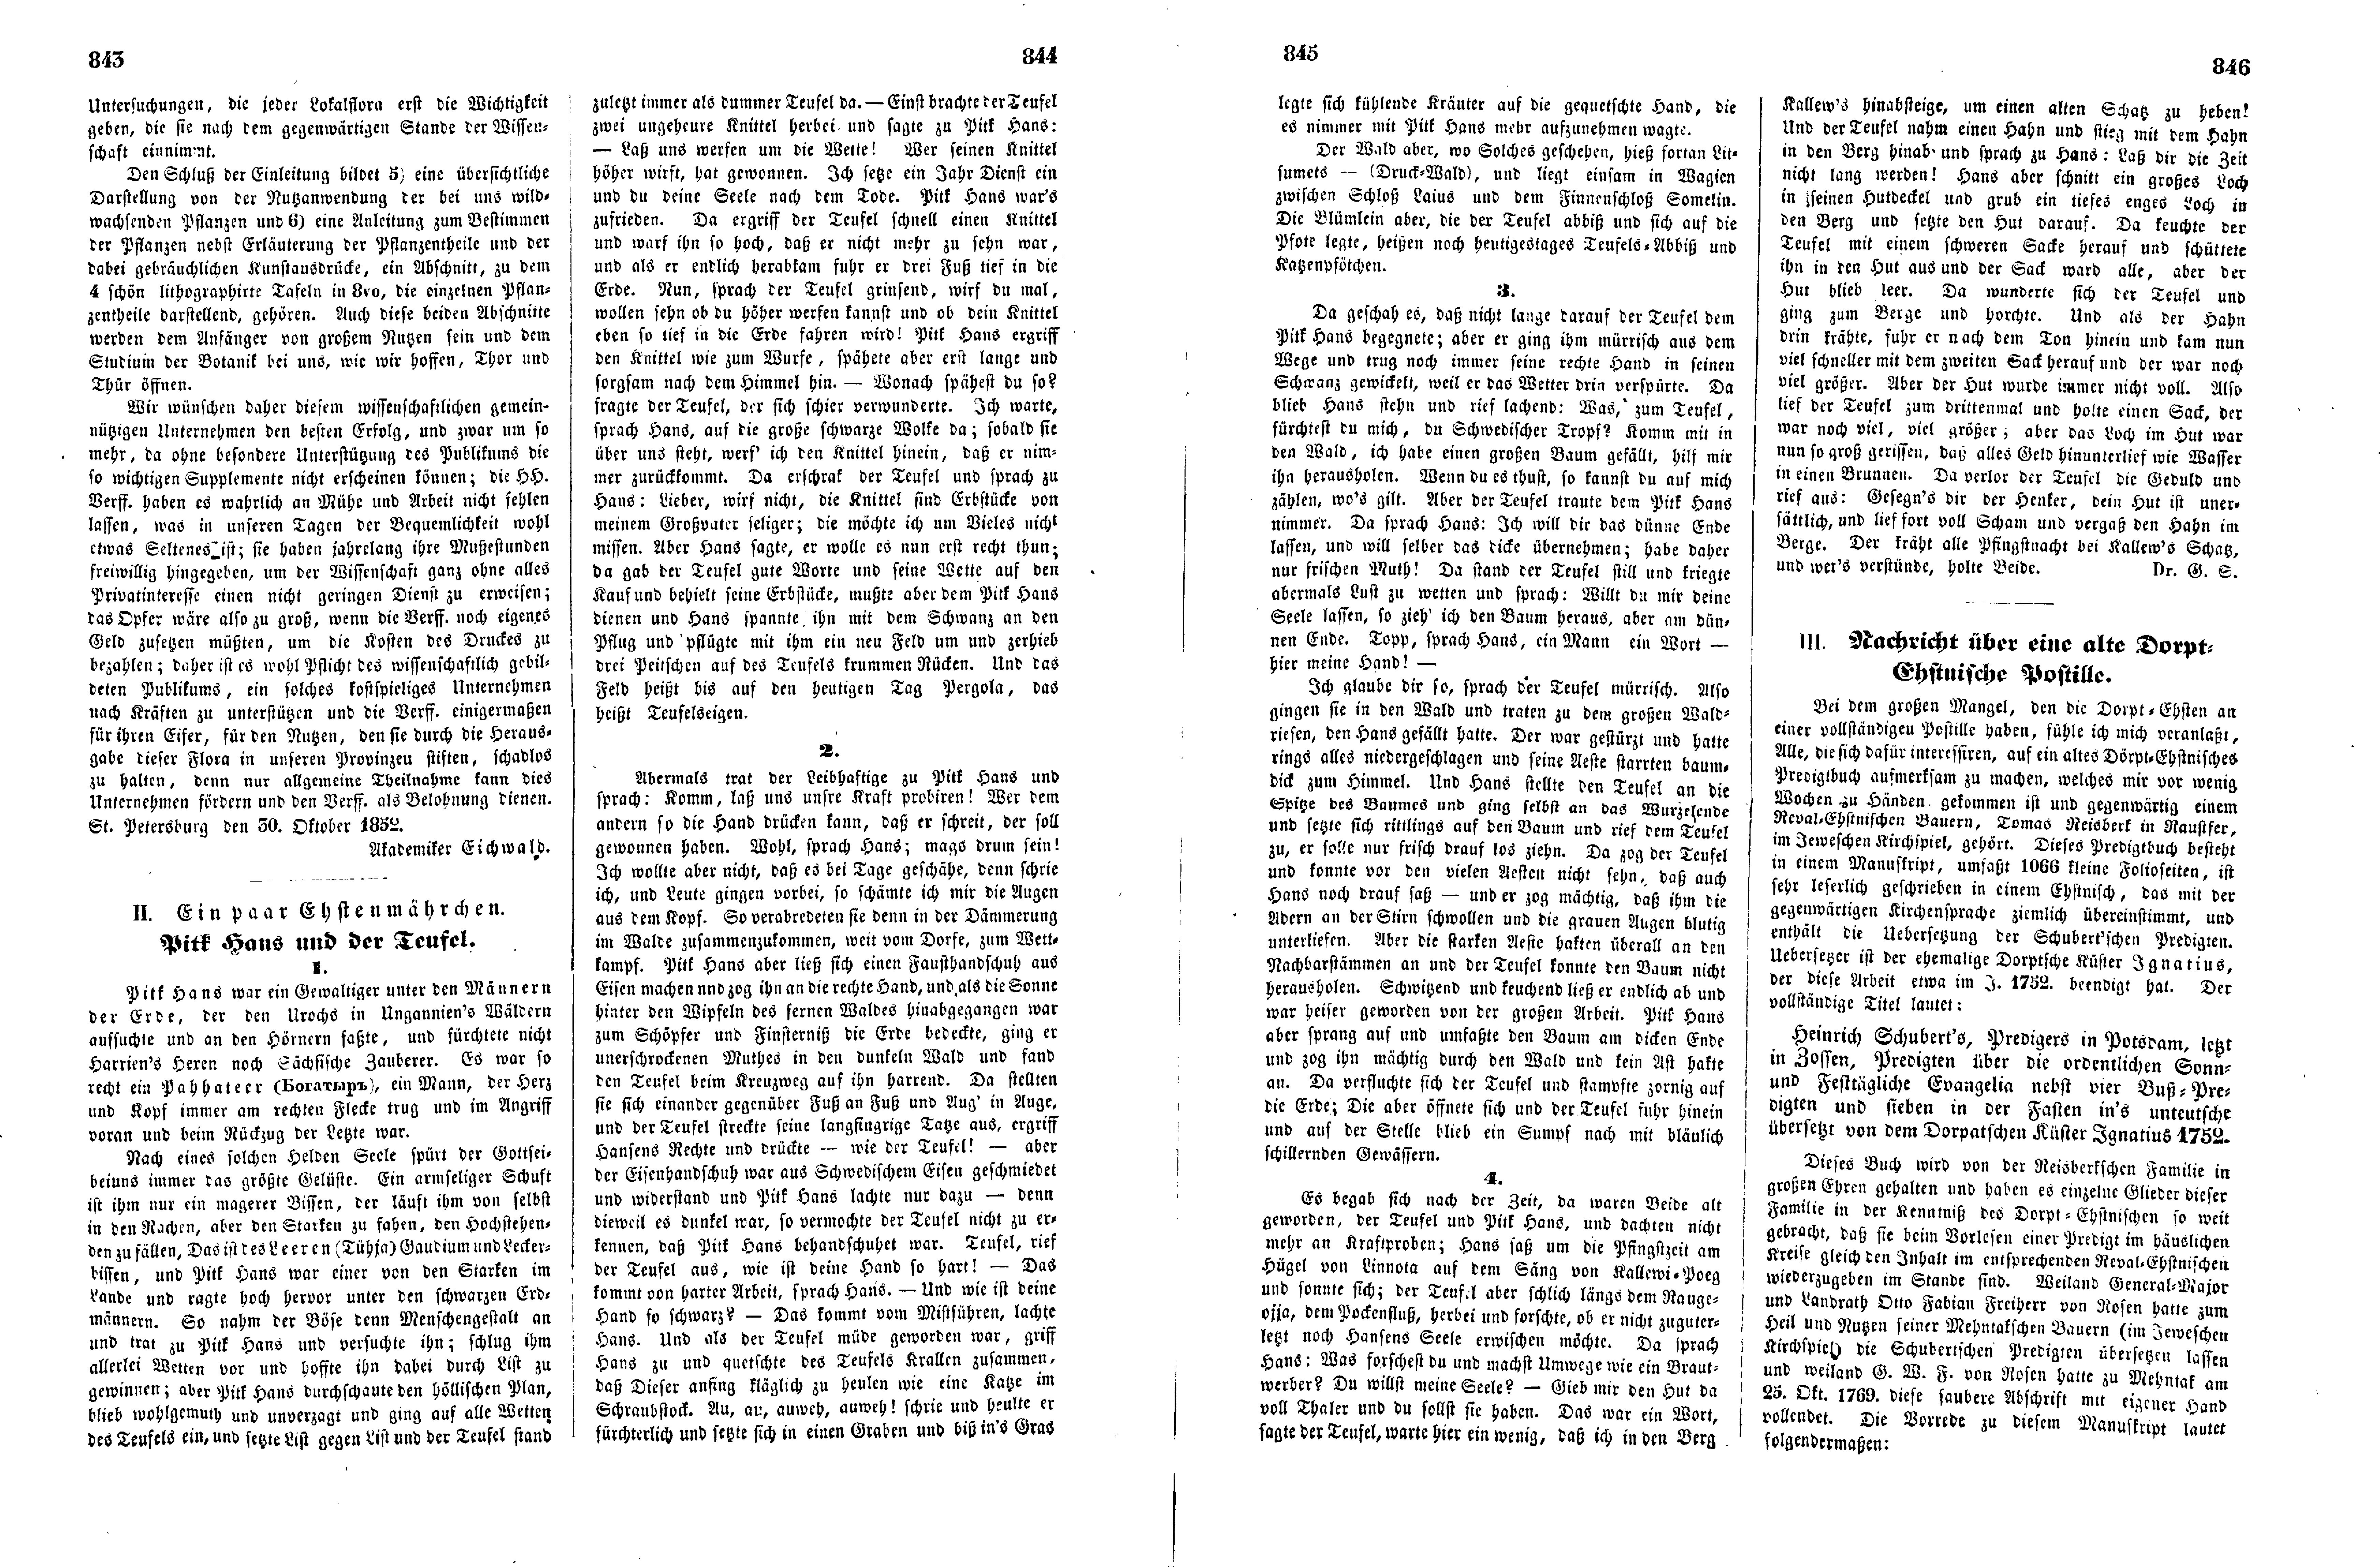 Das Inland [17] (1852) | 216. (843-846) Основной текст